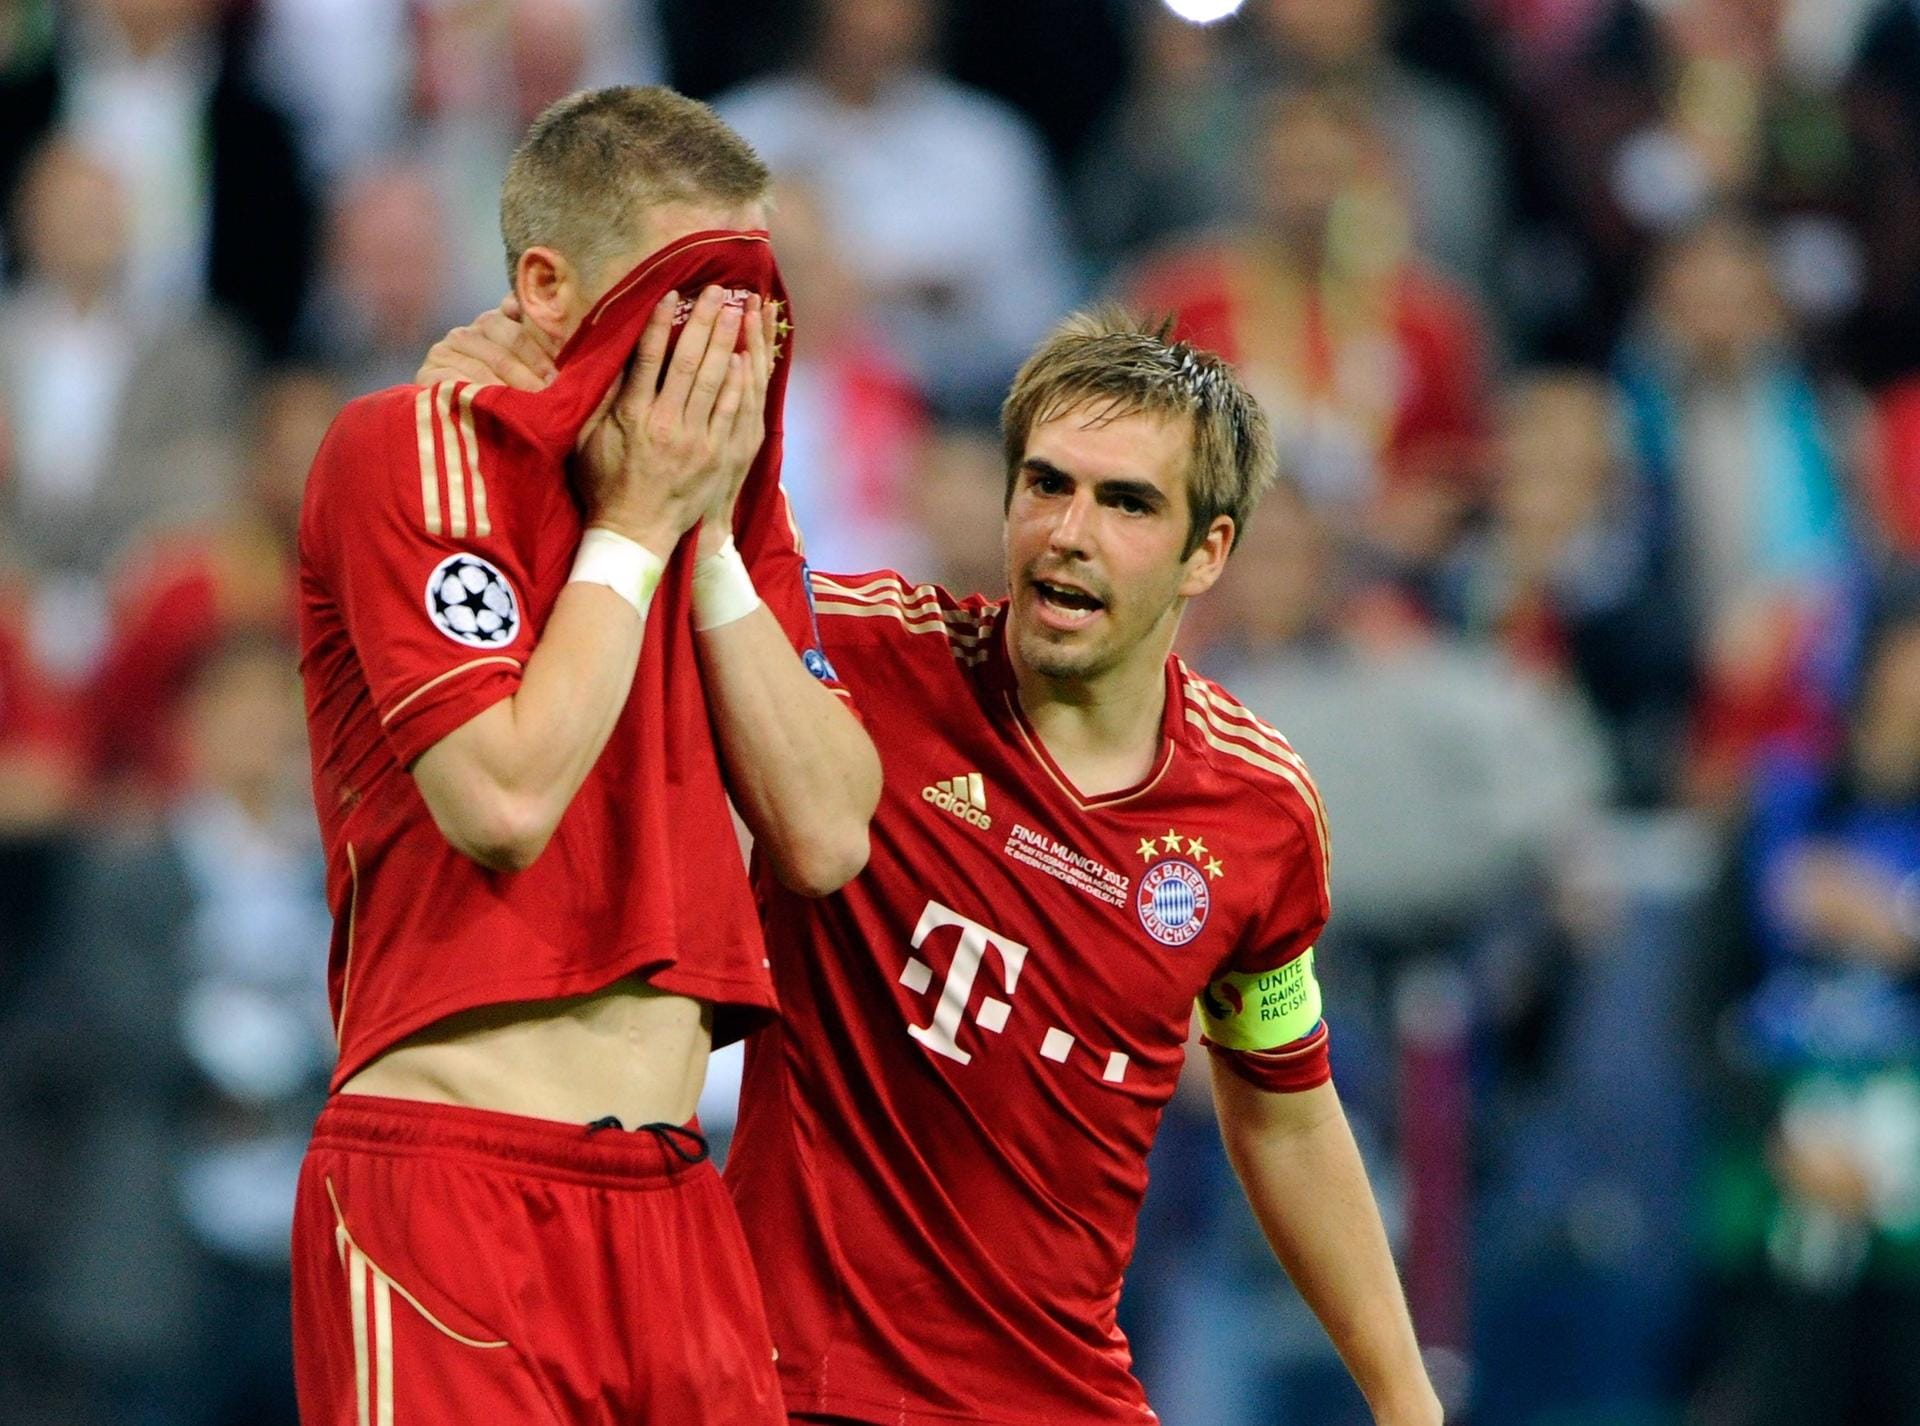 Enntäuschungen erlebte Lahm aber auch mit seinen Bayern: 2012 unterlag der FCB Chelsea im "Finale dahoam" der Champions League. Hier tröstet Lahm Schweinsteiger, der seinen Elfmeter verschoss.